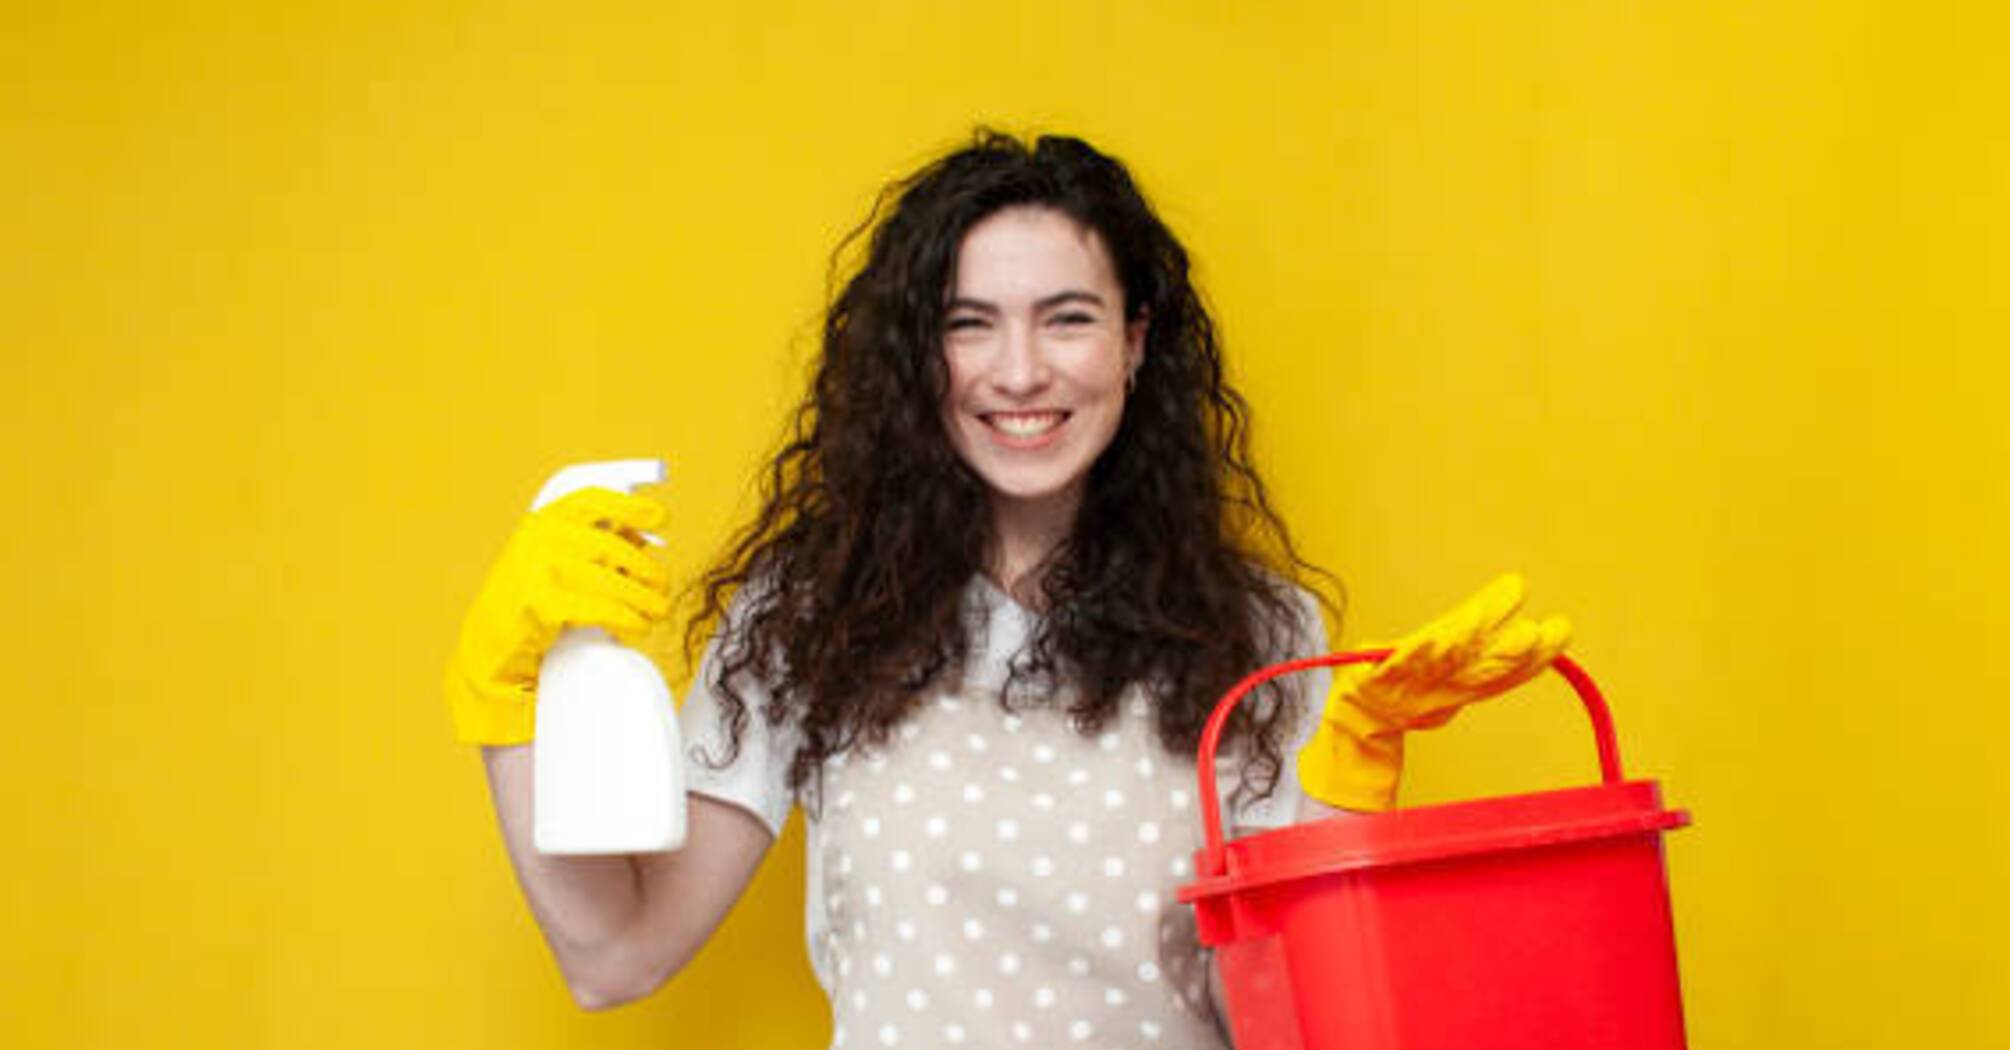 Як пришвидшити процес прибирання: 5 ефективних порад